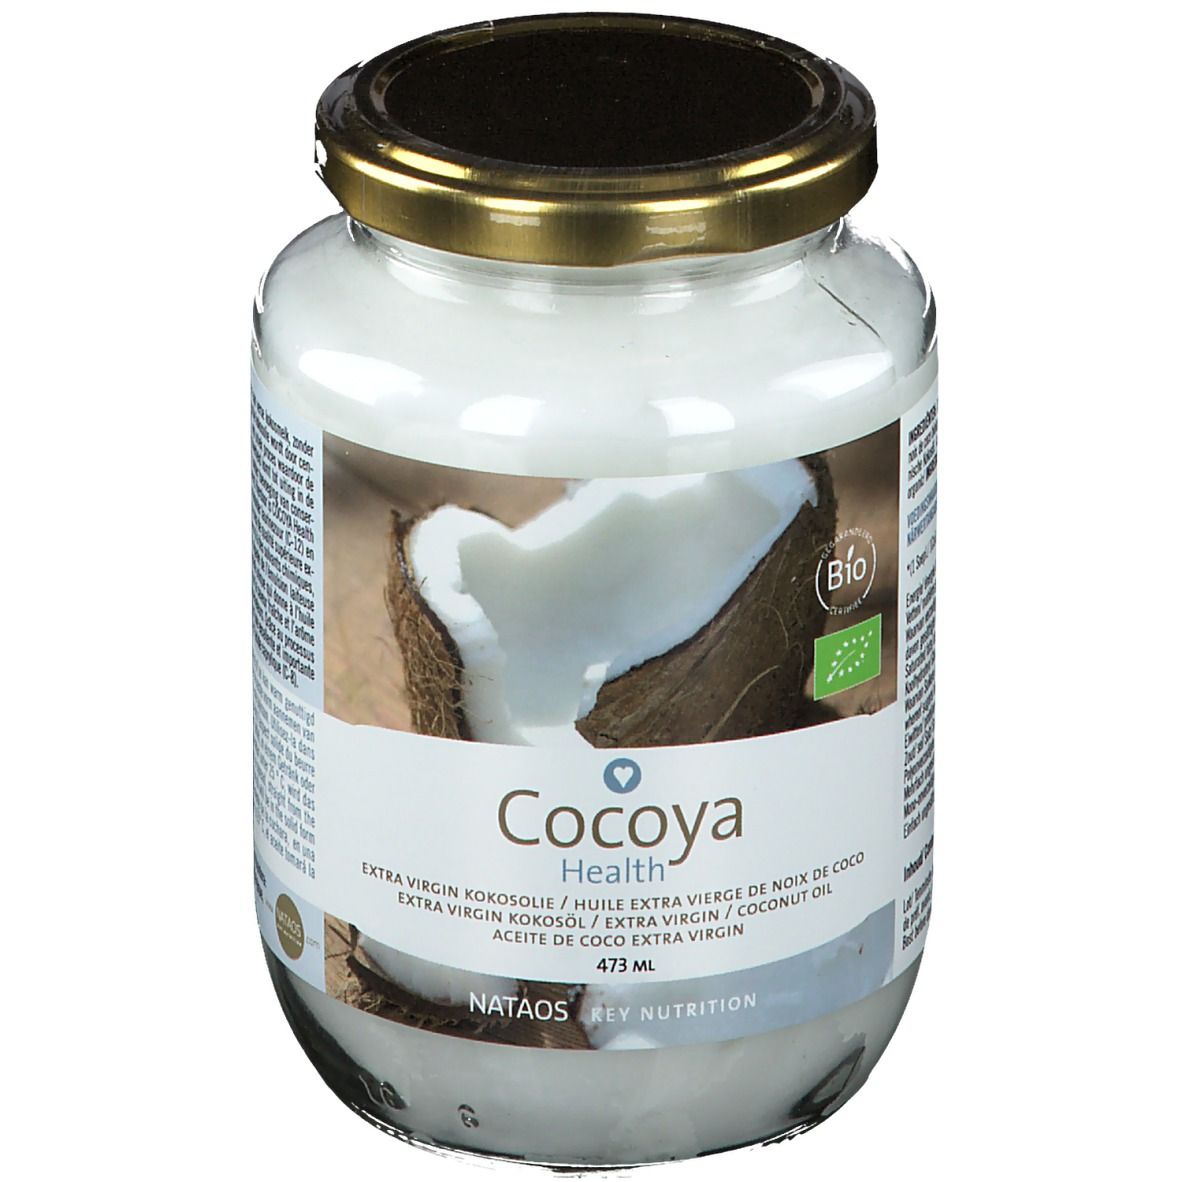 OJIBWA-DE ROECK Cocoya Health Kokosöl